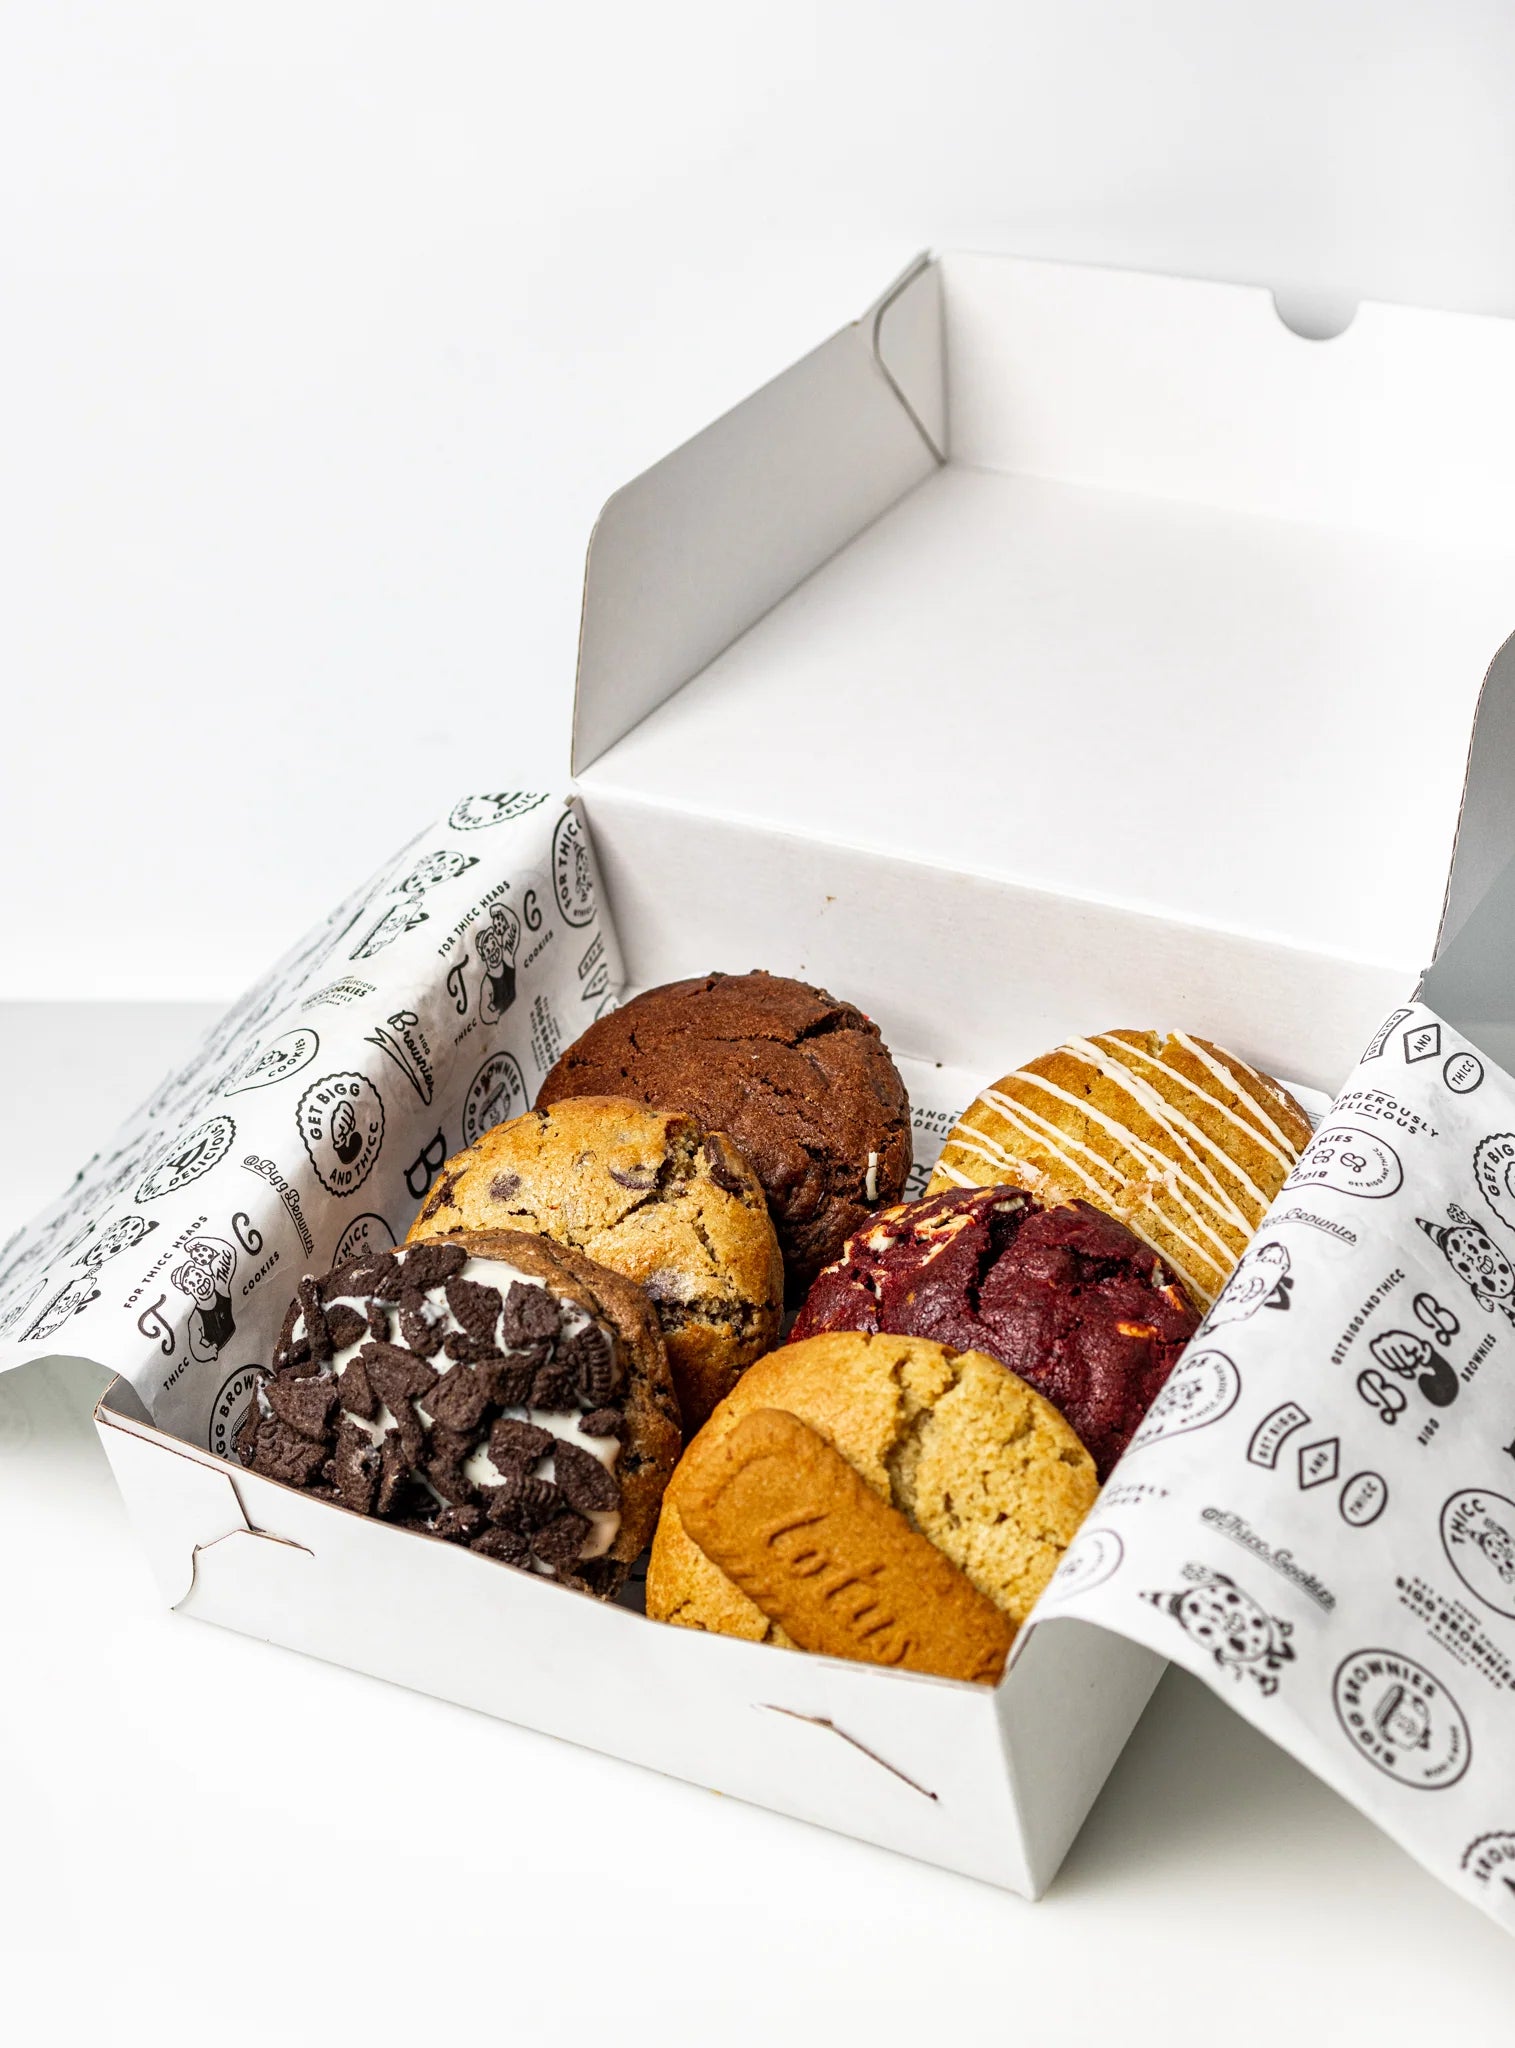 "DANG U THICC" Box- BIGG Brownies & THICC Cookies - New York Style Cookies